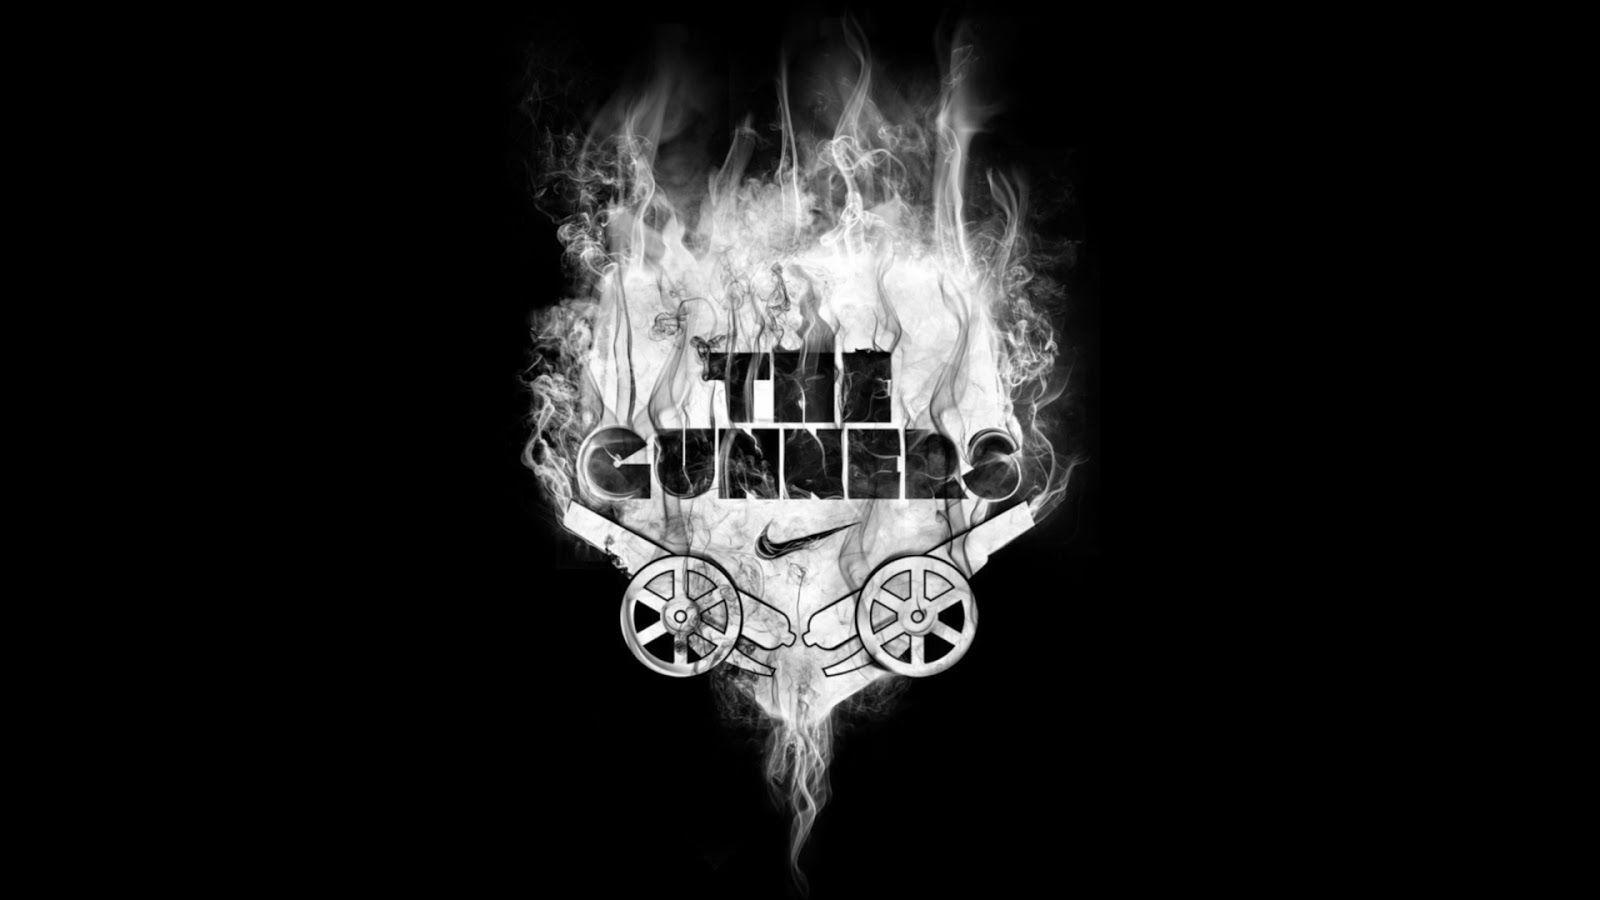 Arsenal The Gunners Wallpaper. Football Wallpaper HD